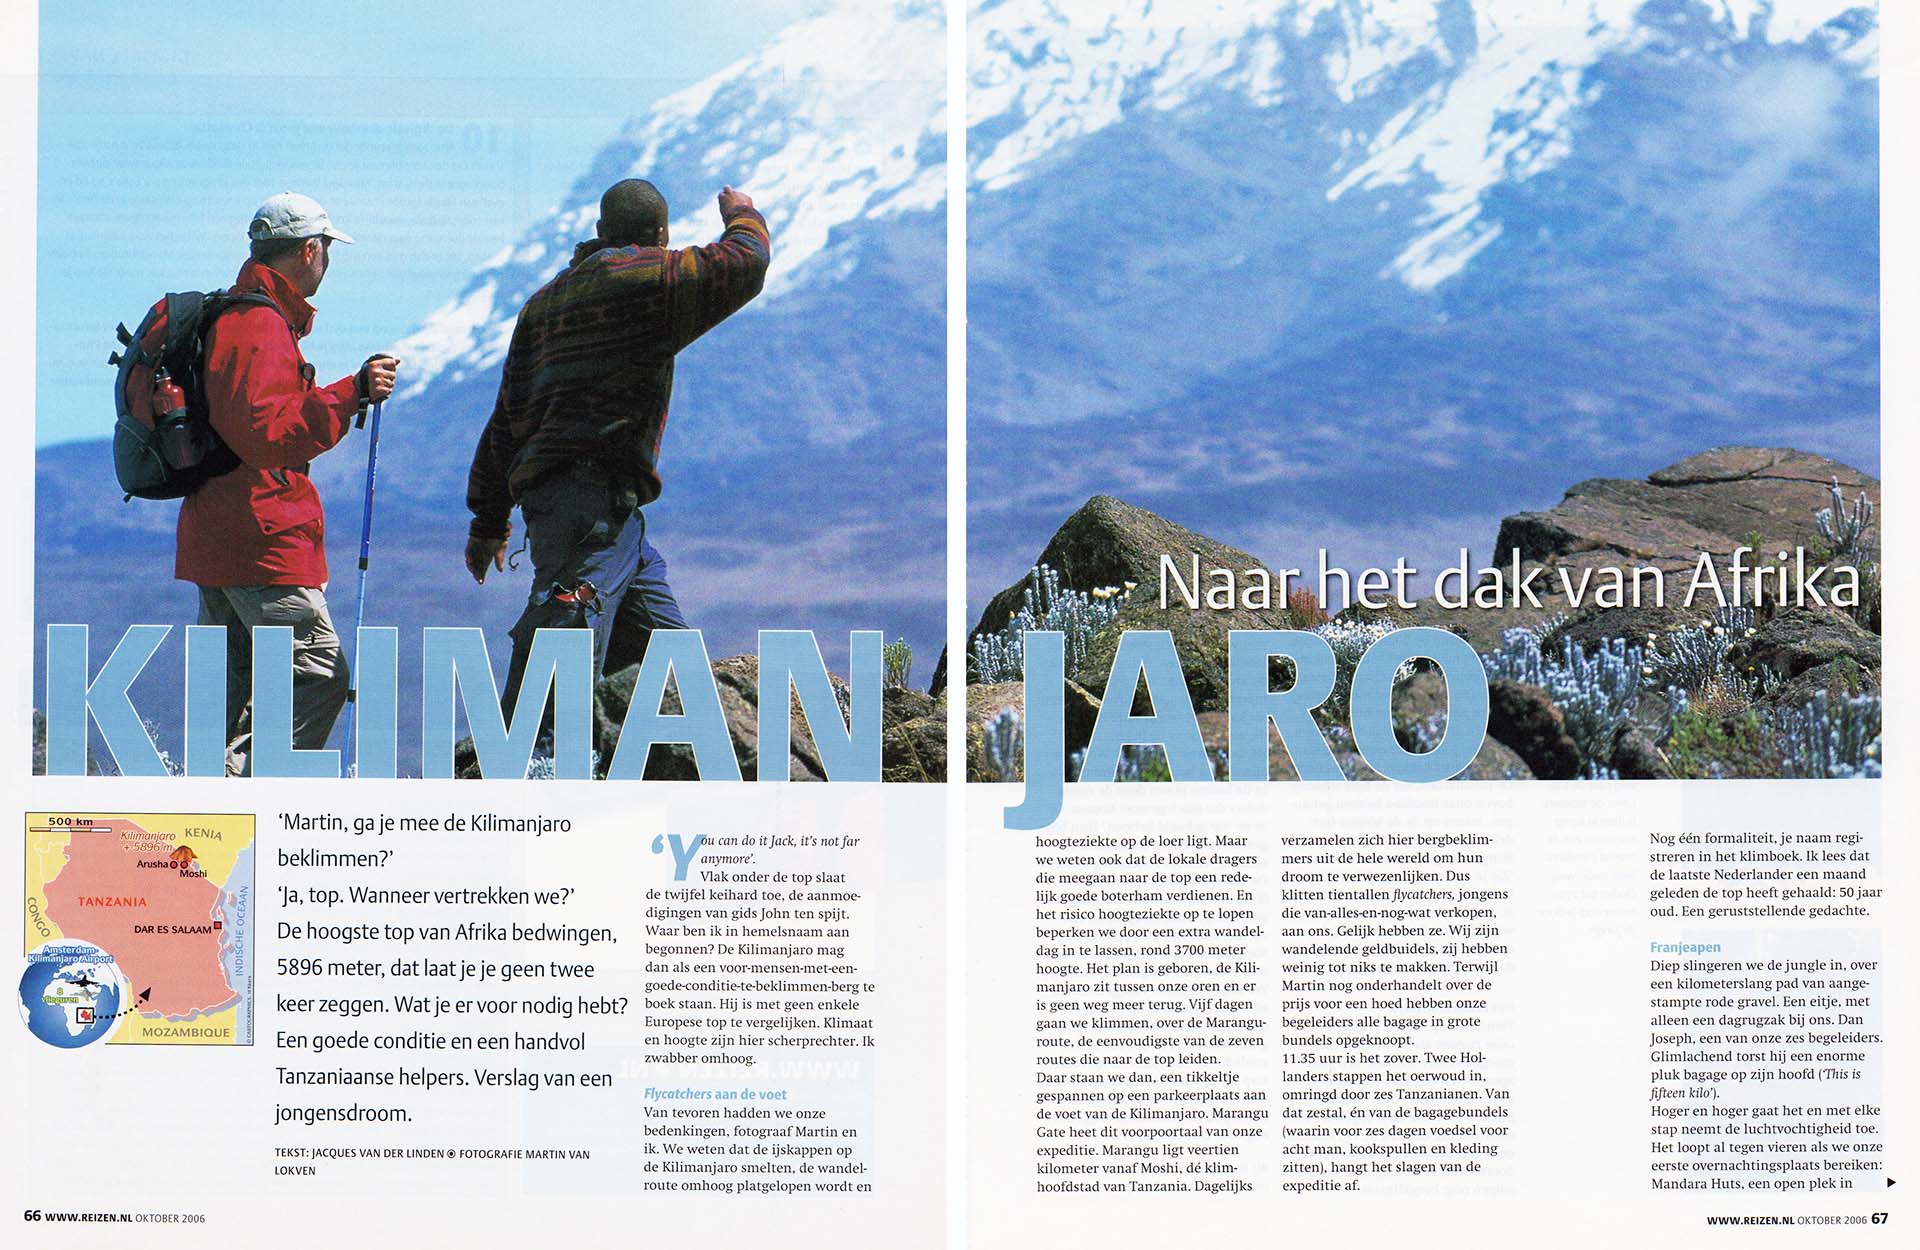 Foto van twee mensen op weg naar de top van Kilimanjaro.